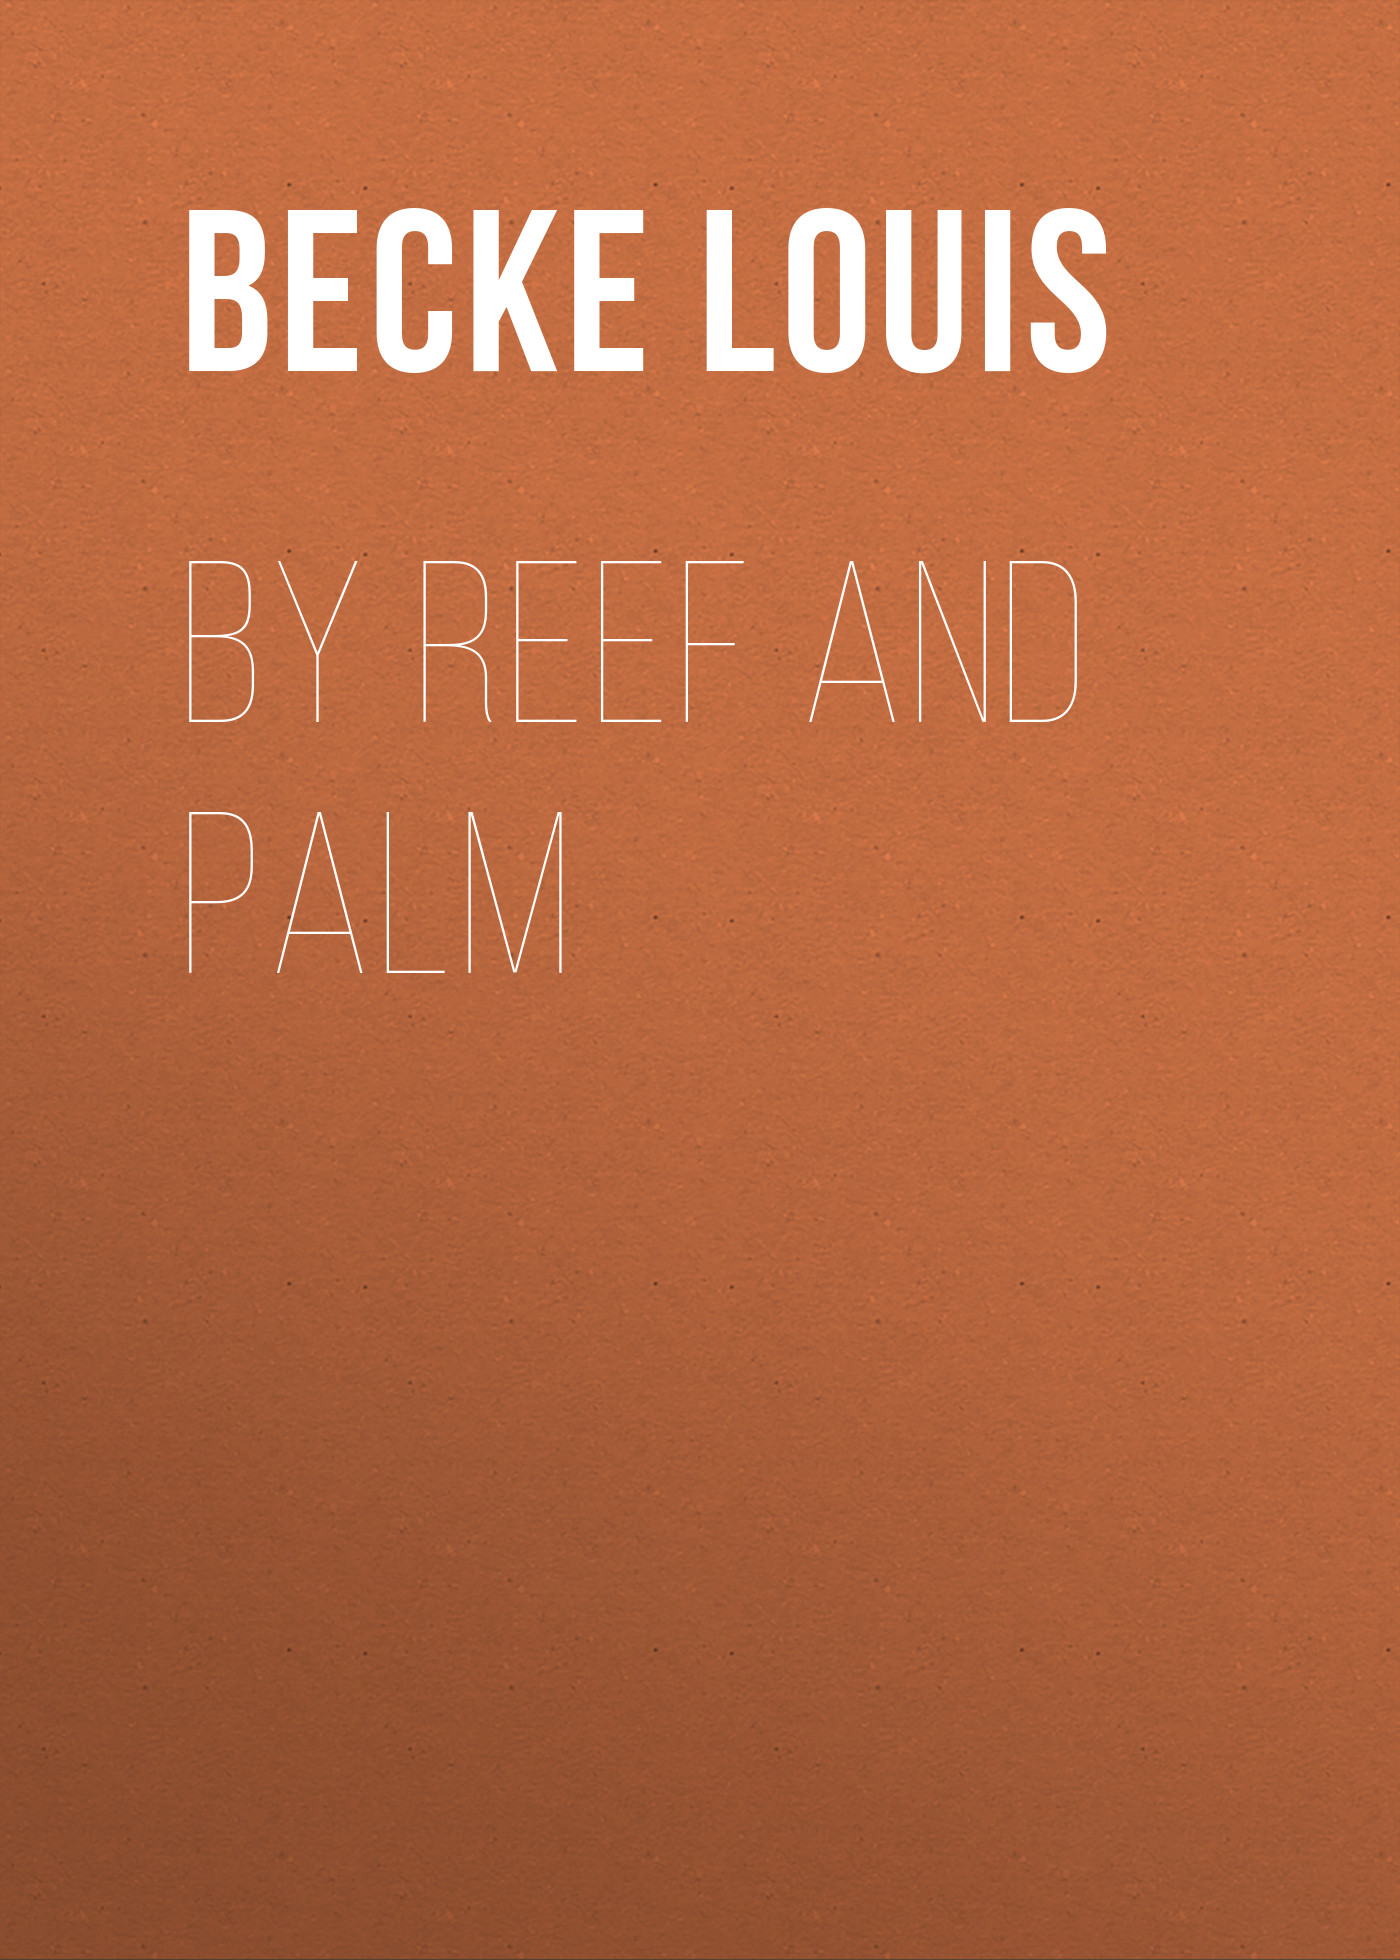 Книга By Reef and Palm из серии , созданная Louis Becke, может относится к жанру Зарубежная классика, Литература 19 века, Зарубежная старинная литература. Стоимость электронной книги By Reef and Palm с идентификатором 36366694 составляет 0 руб.